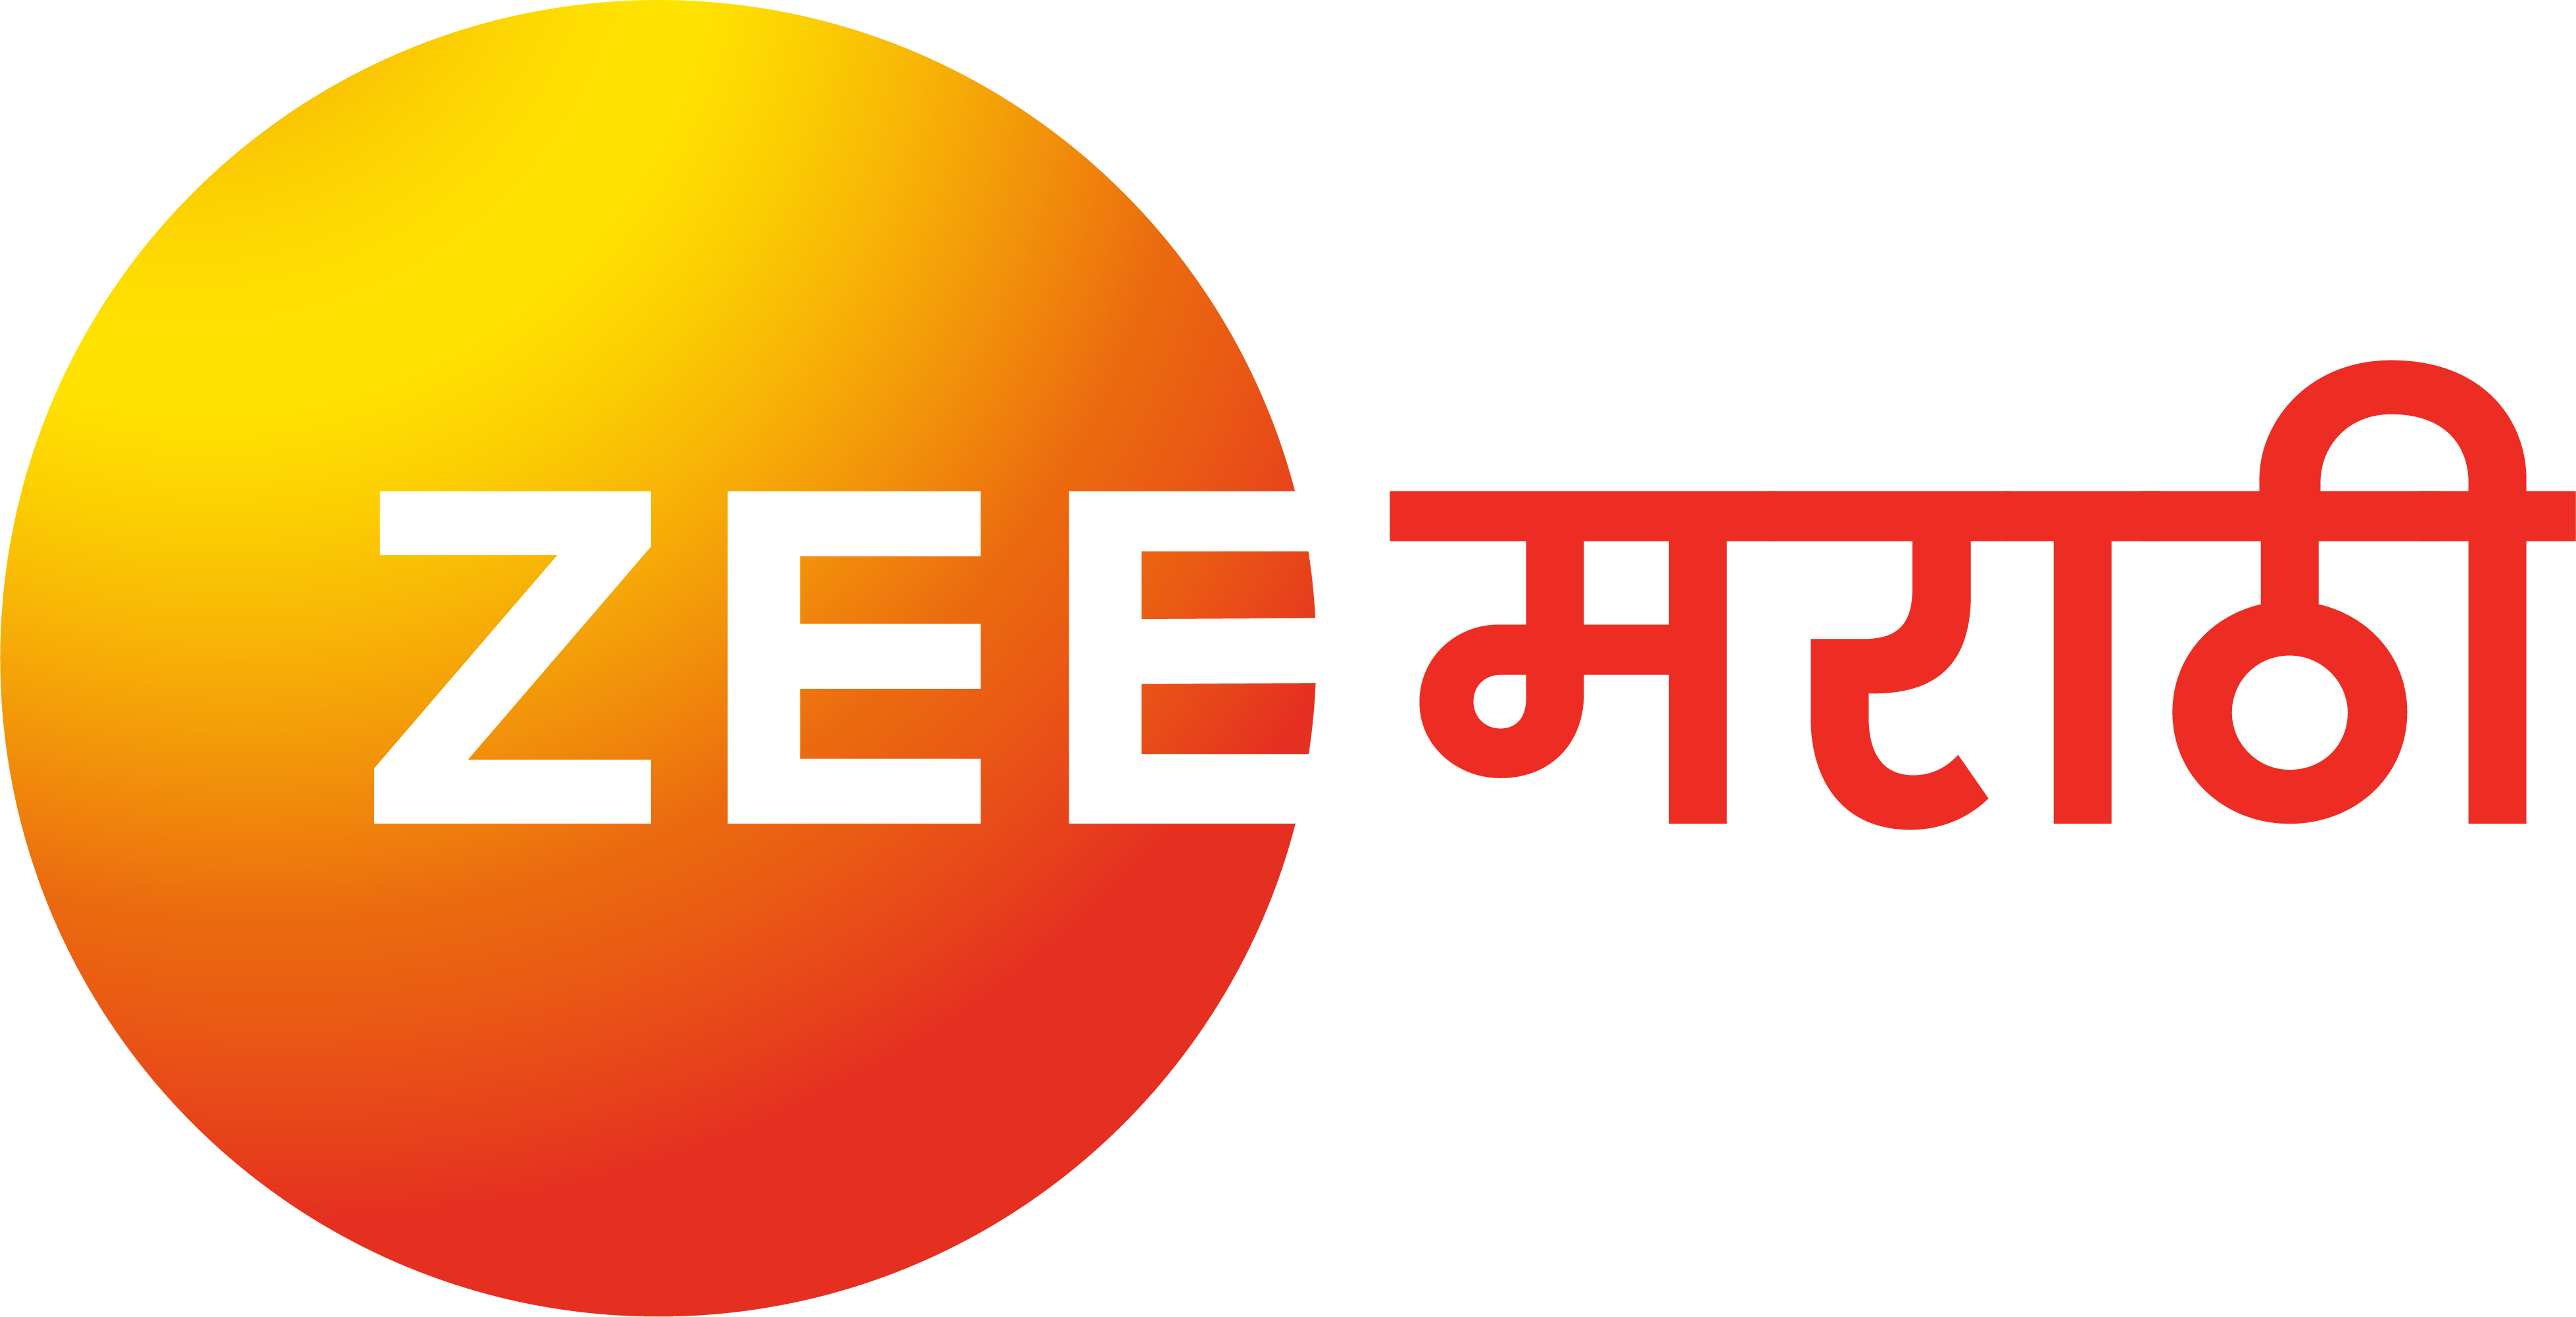 Television Media Zee Marathi Advertising in India